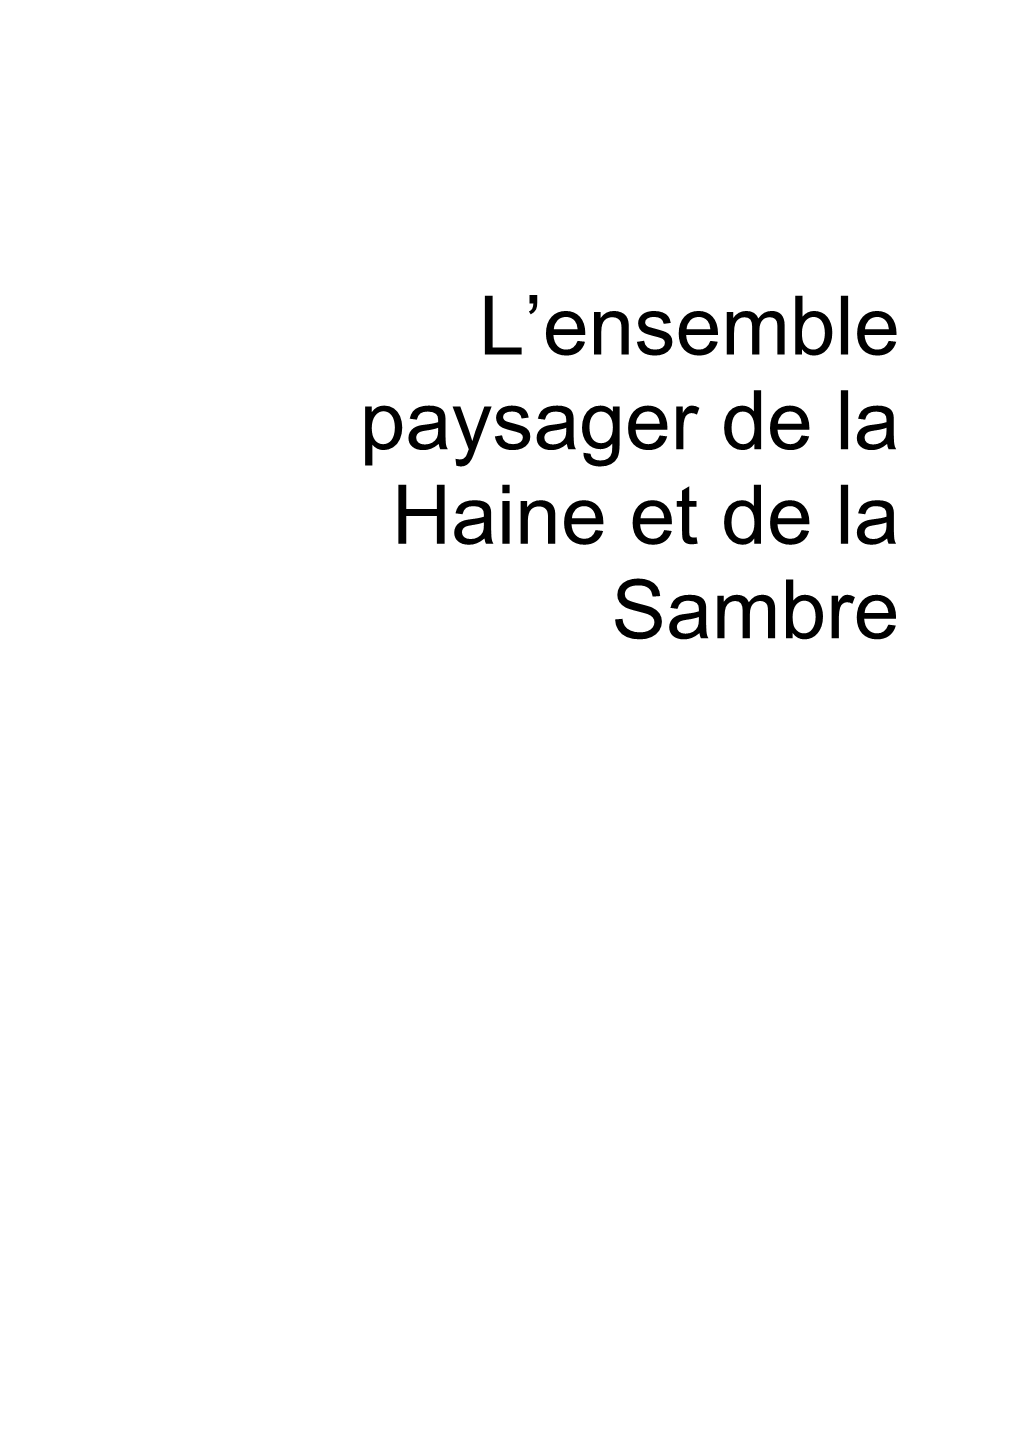 Maquette Haine-Sambre